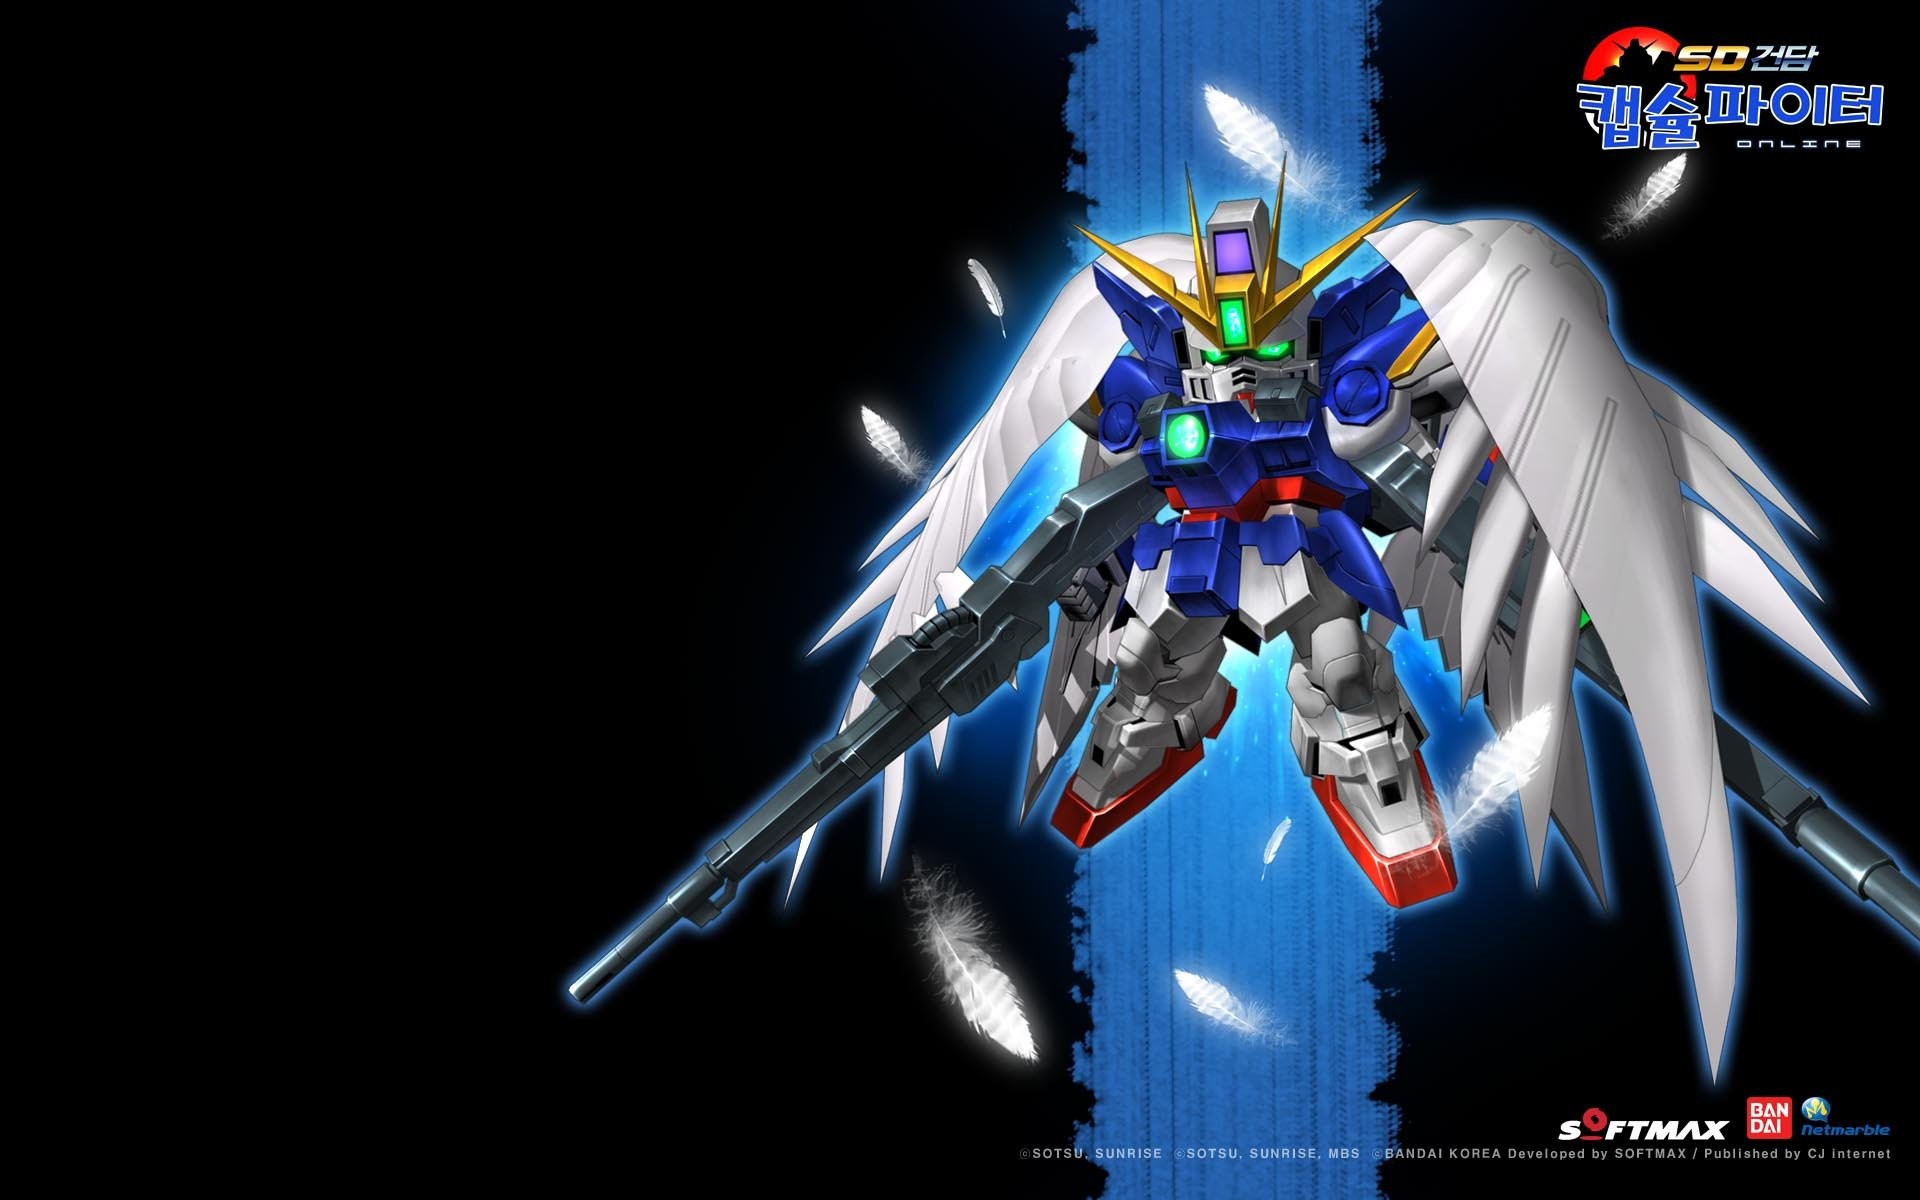 SD Gundam Capsule Fighter Online sci fi shooter tps action mmo fighhting 1gcfo SDGO mecha wallpaper 657182 WallpaperUP